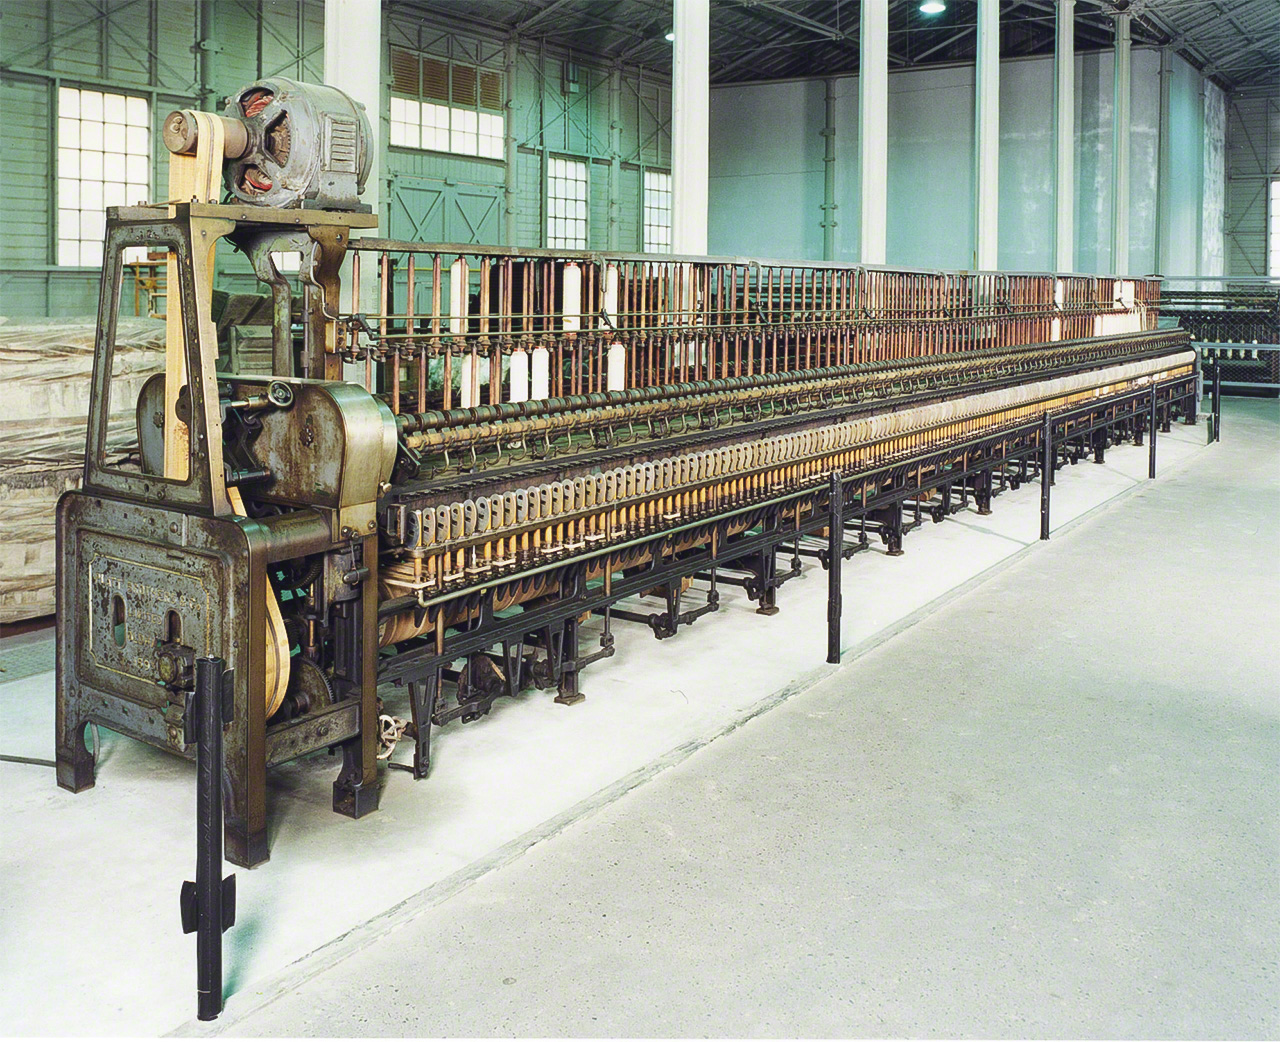 ماكينة الغزل الحلقية من صنع شركة بلات برازر البريطانية.